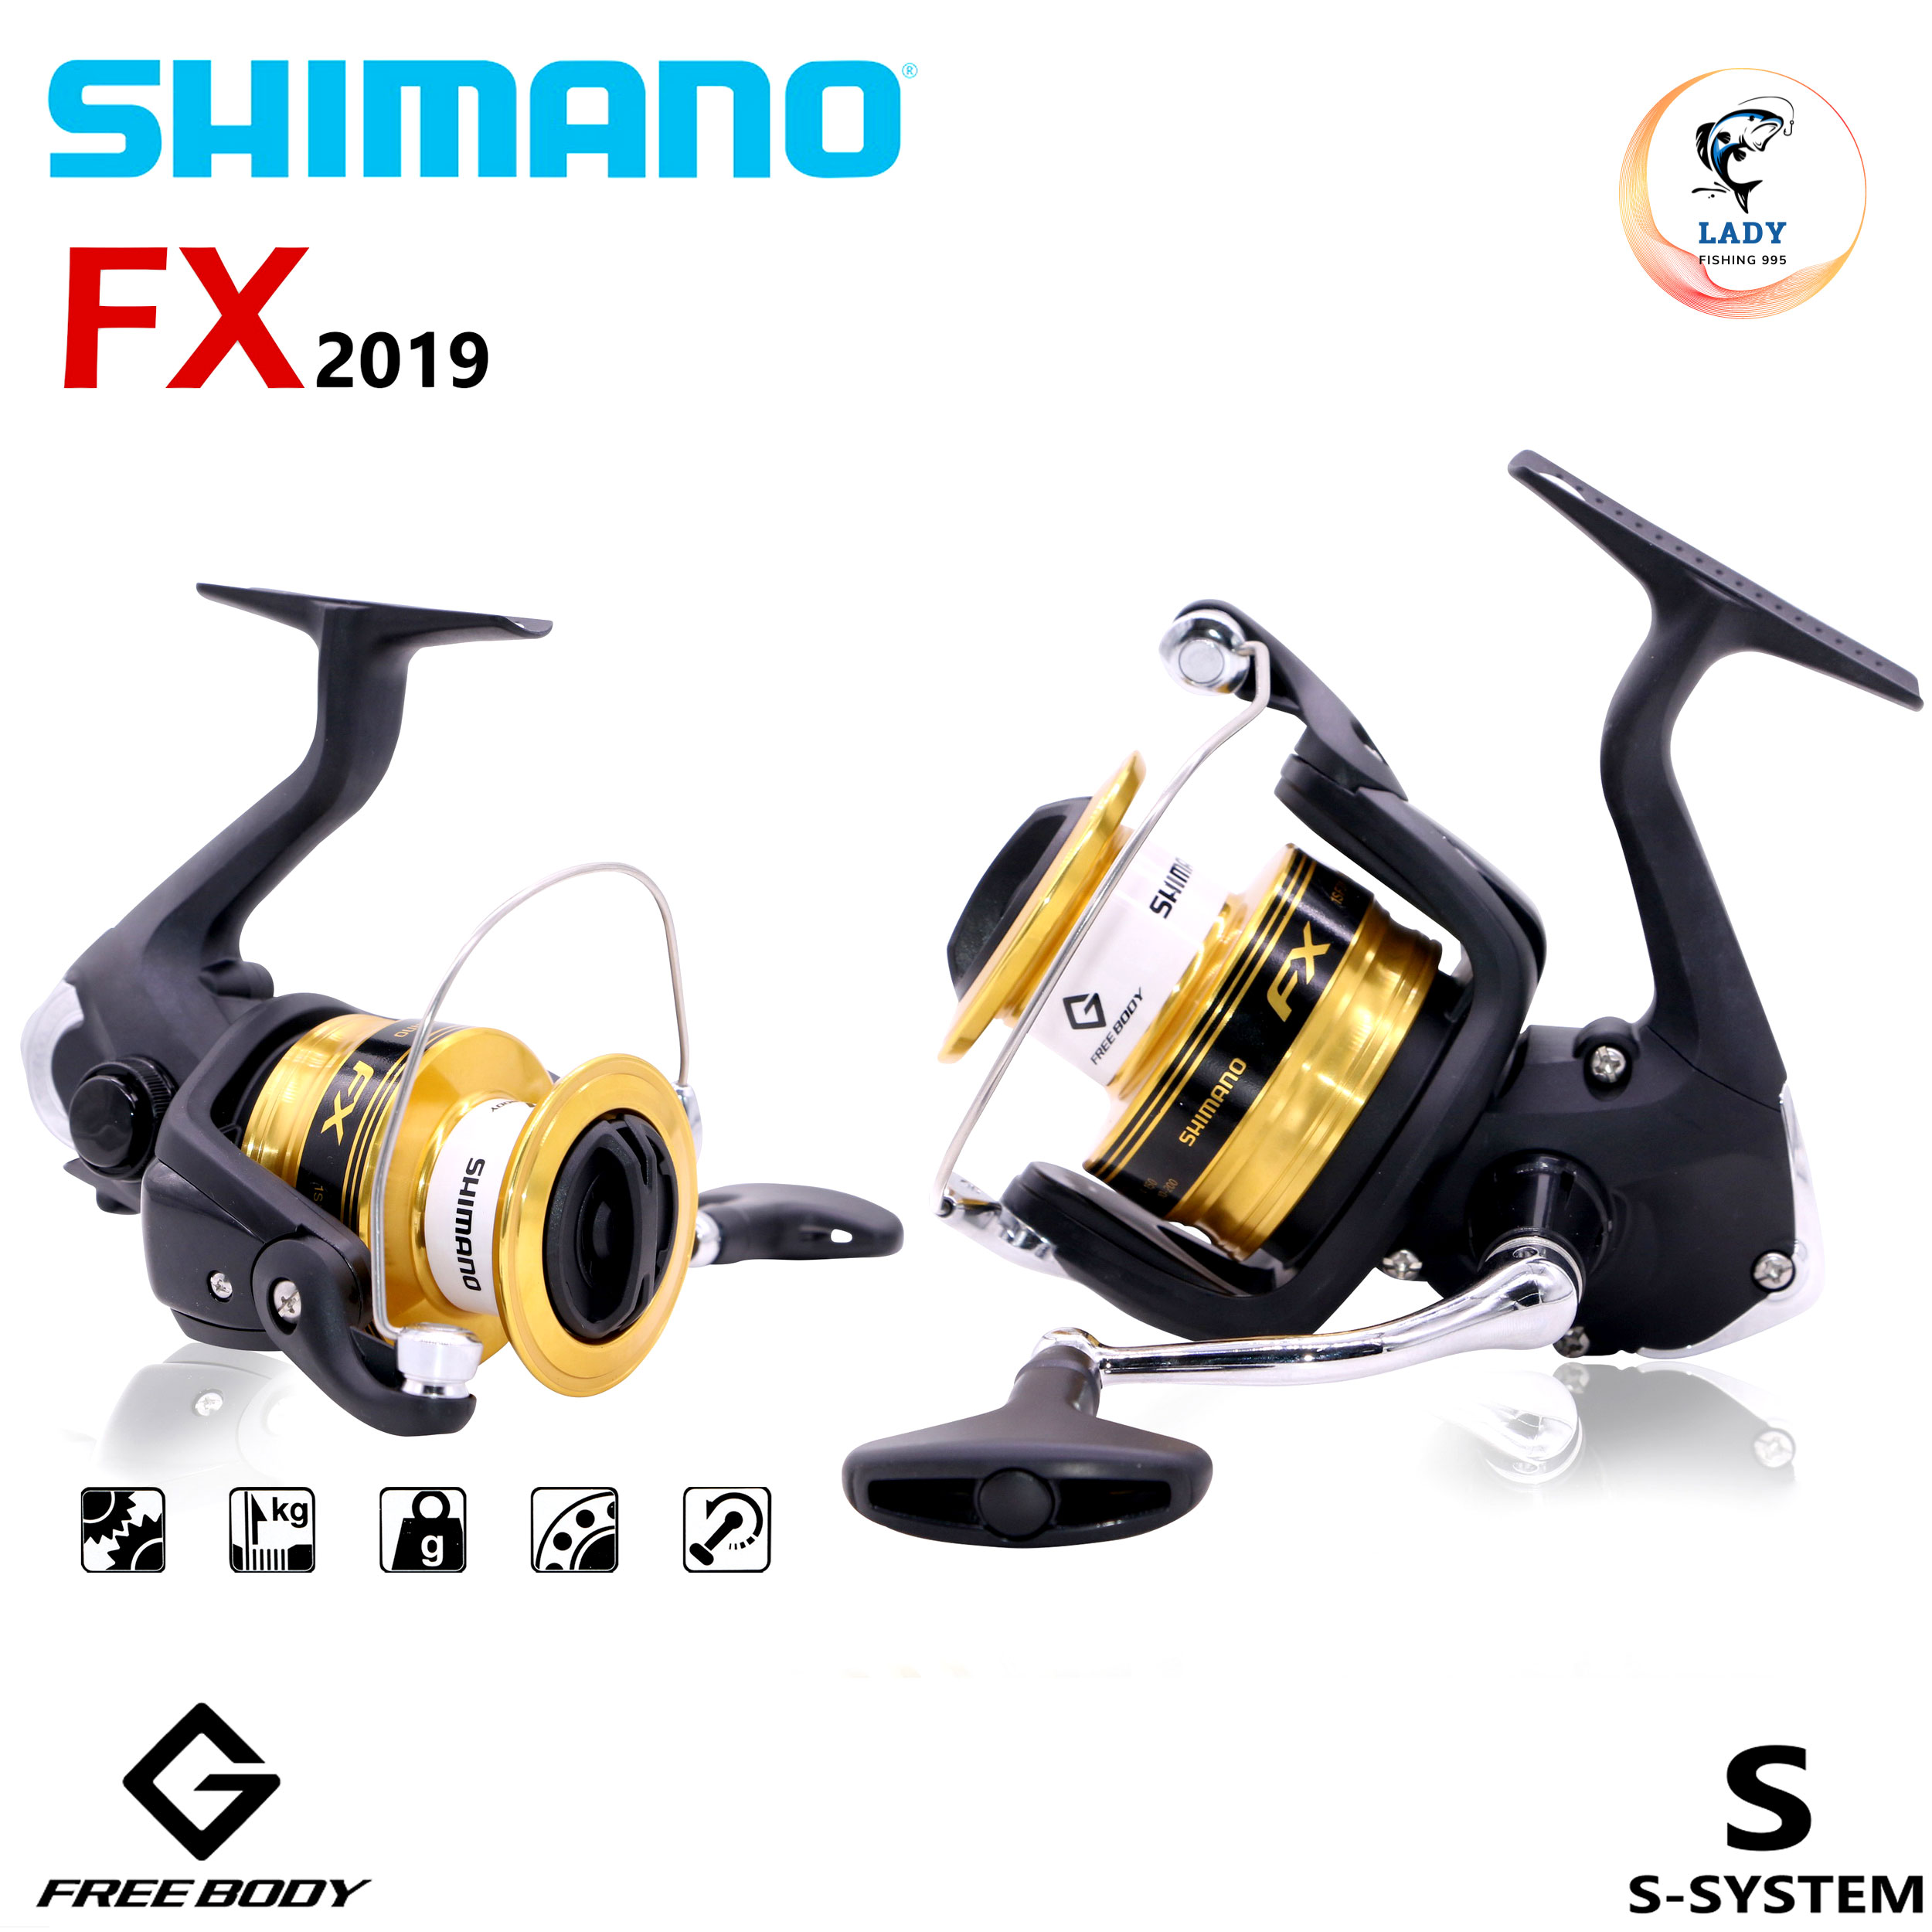 รอกสปิน Shimano FX รุ่นปี 2019 มีเบอร์ 1000/2000/2500HG/3000/4000